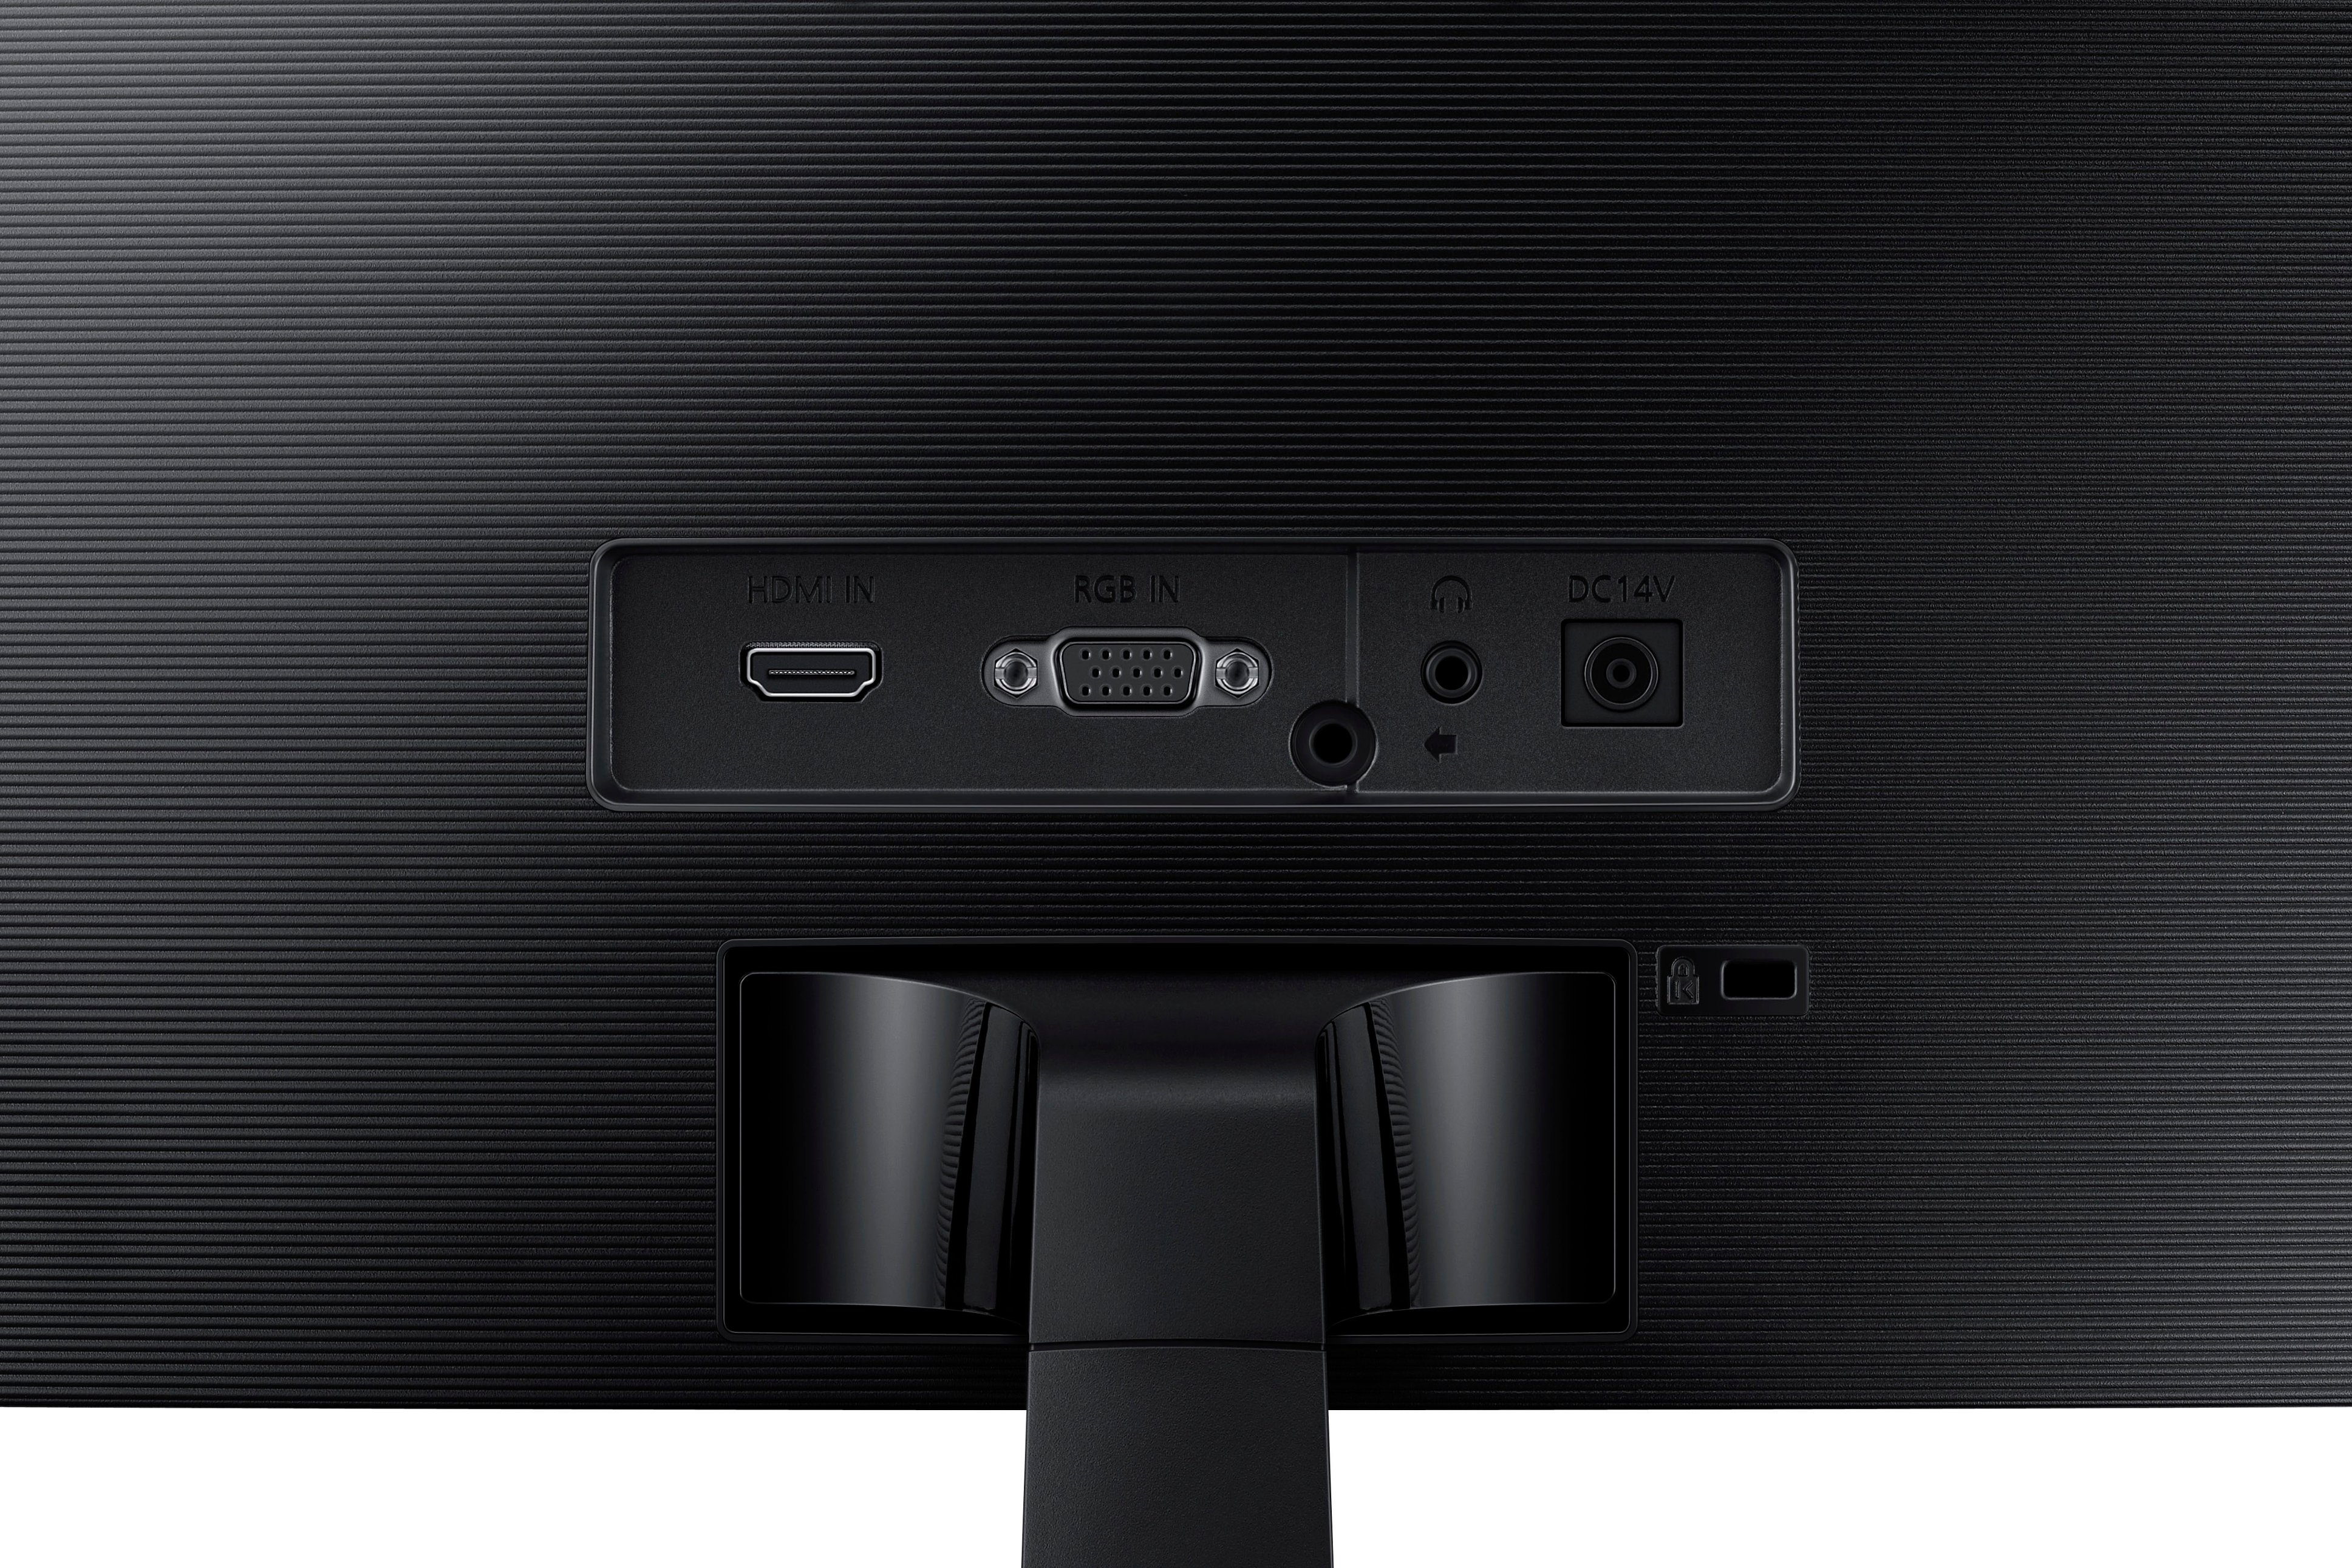 Monitor Gamer Curvo Samsung LC24F390FHLXZX LED 24 Pulgadas HDMI